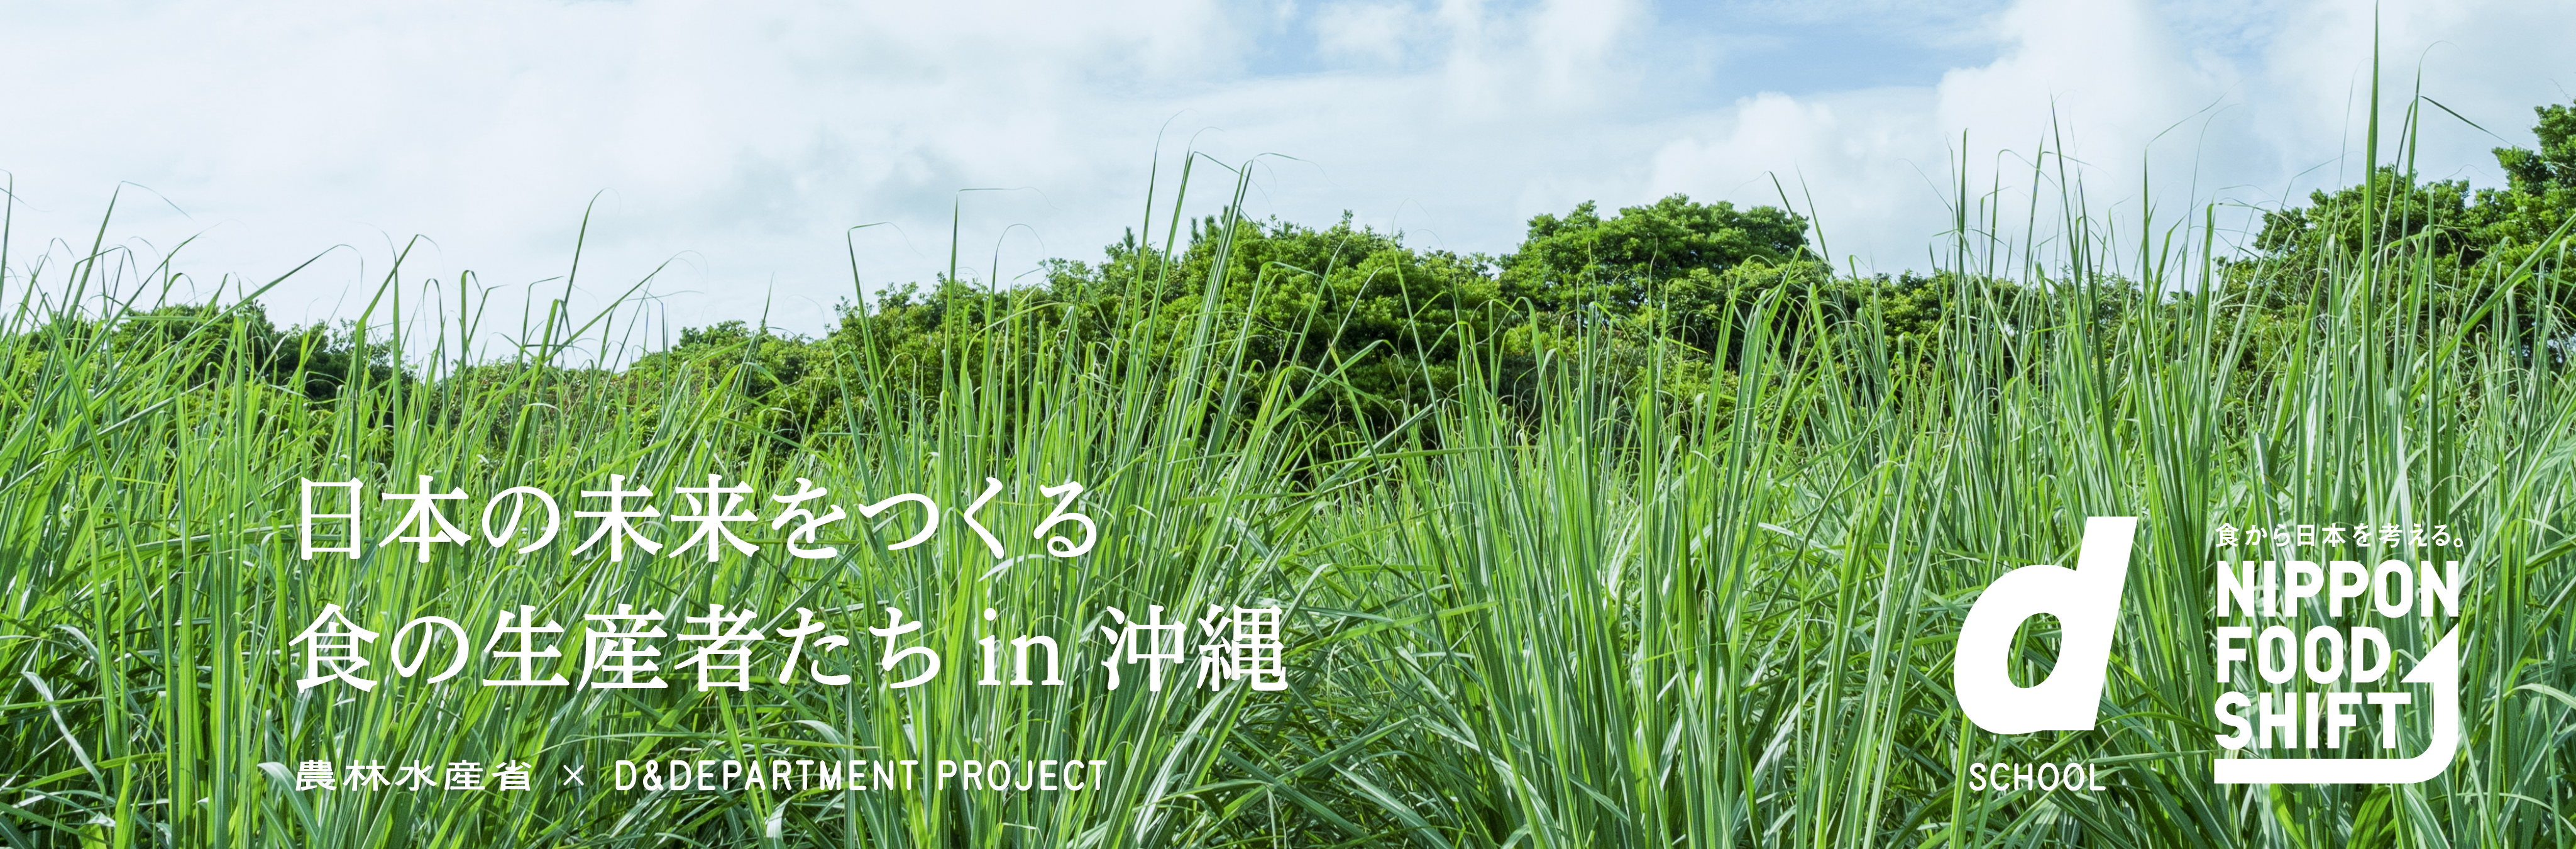 d SCHOOL 日本の未来をつくる食の生産者たち in 沖縄